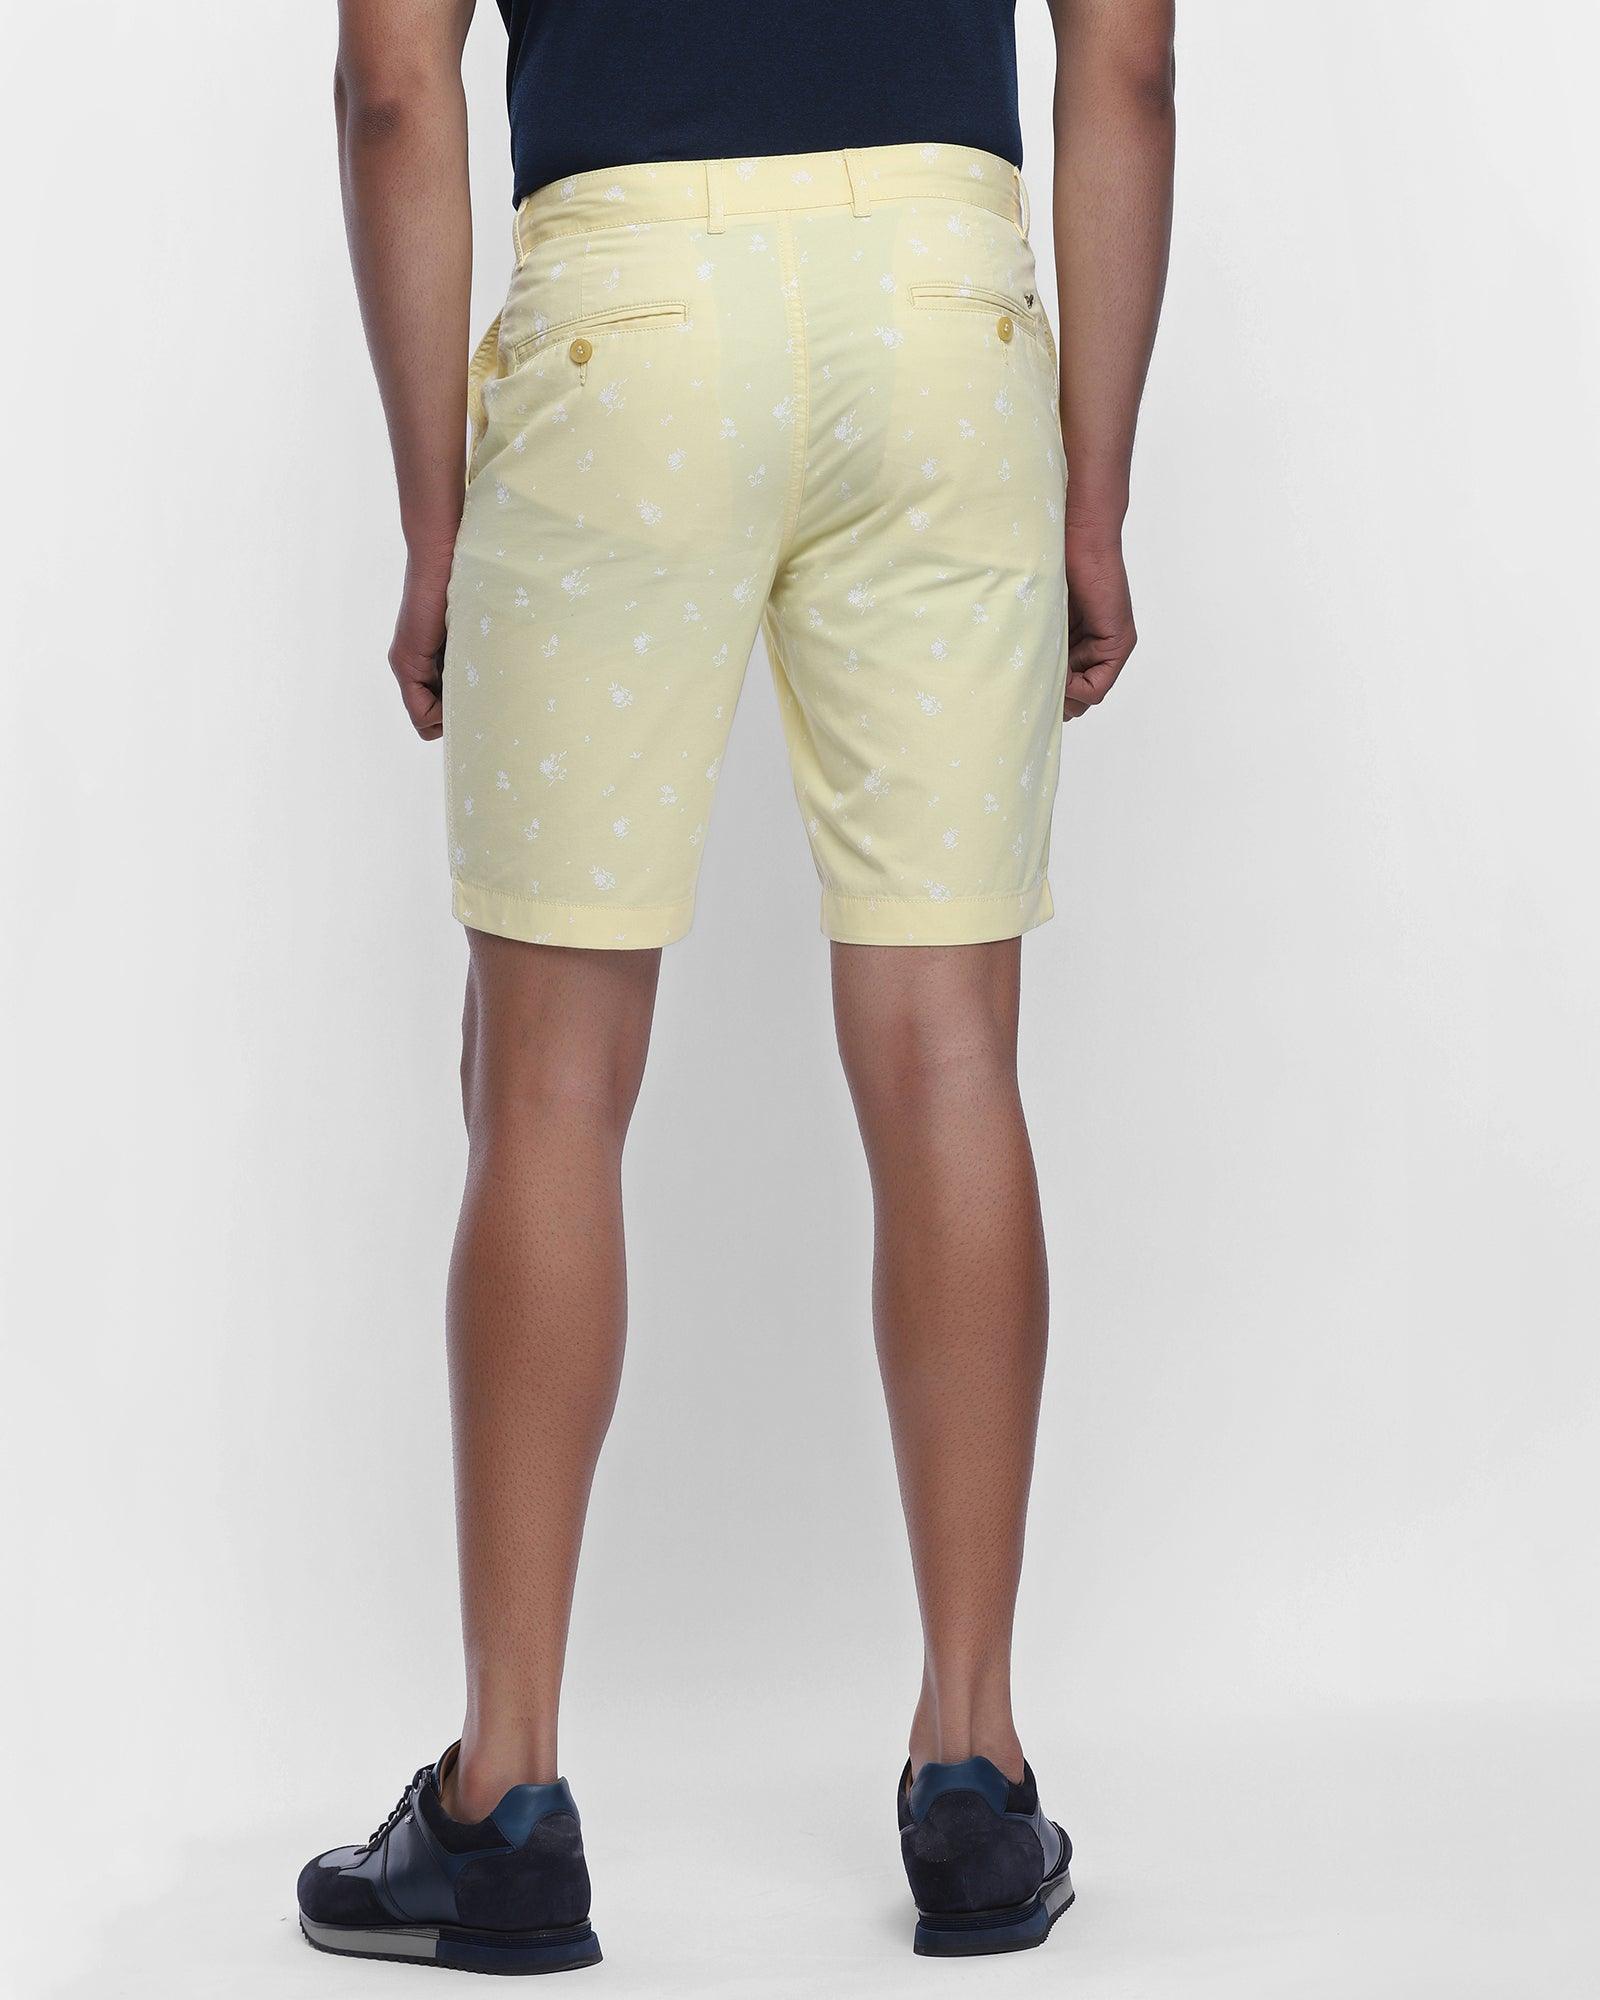 Casual Yellow Printed Shorts - Rios